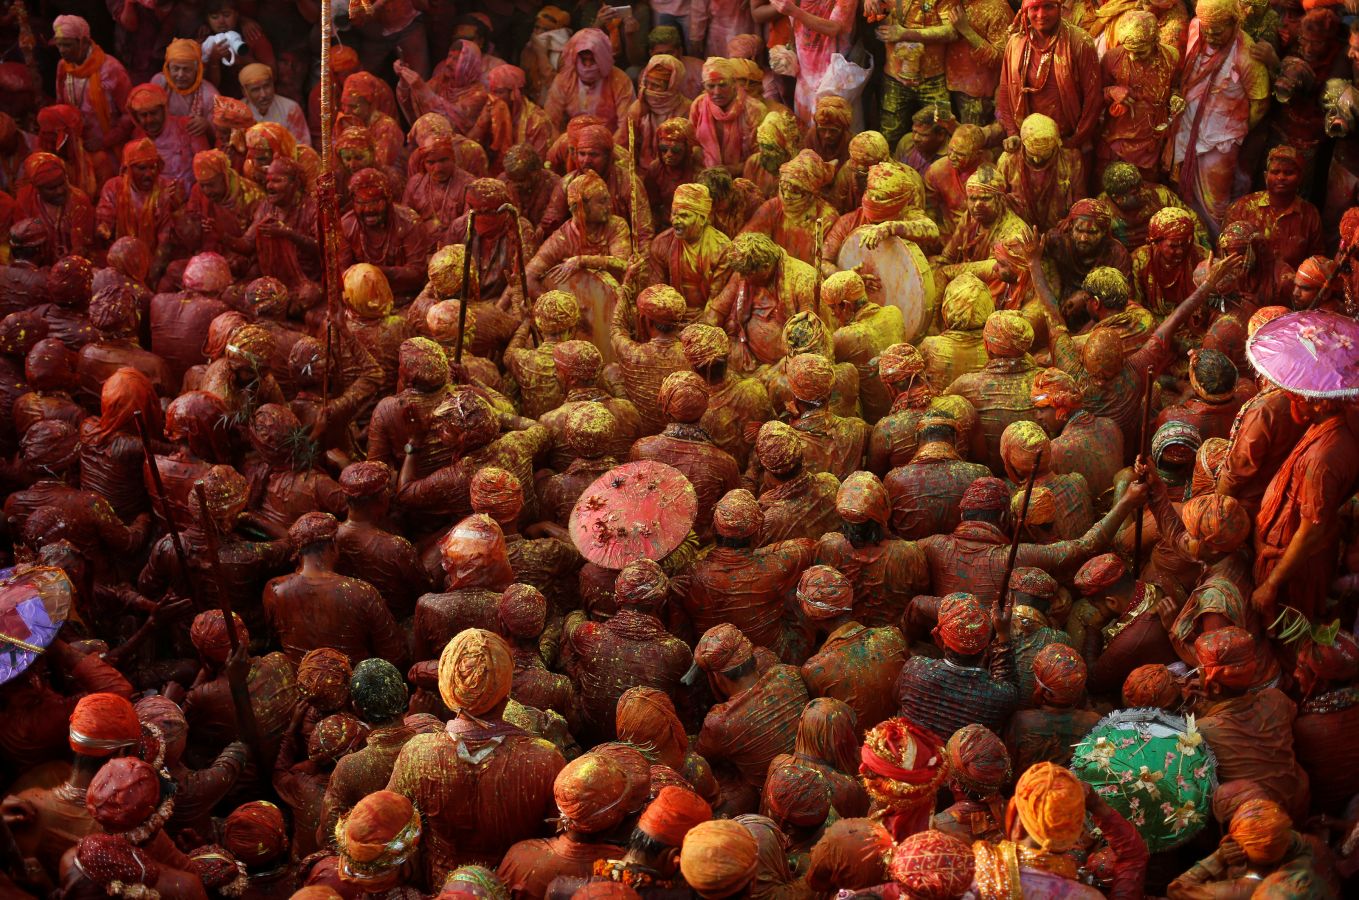 Numerosas localidades de la India celebran el festival Holi de los colores de la primavera